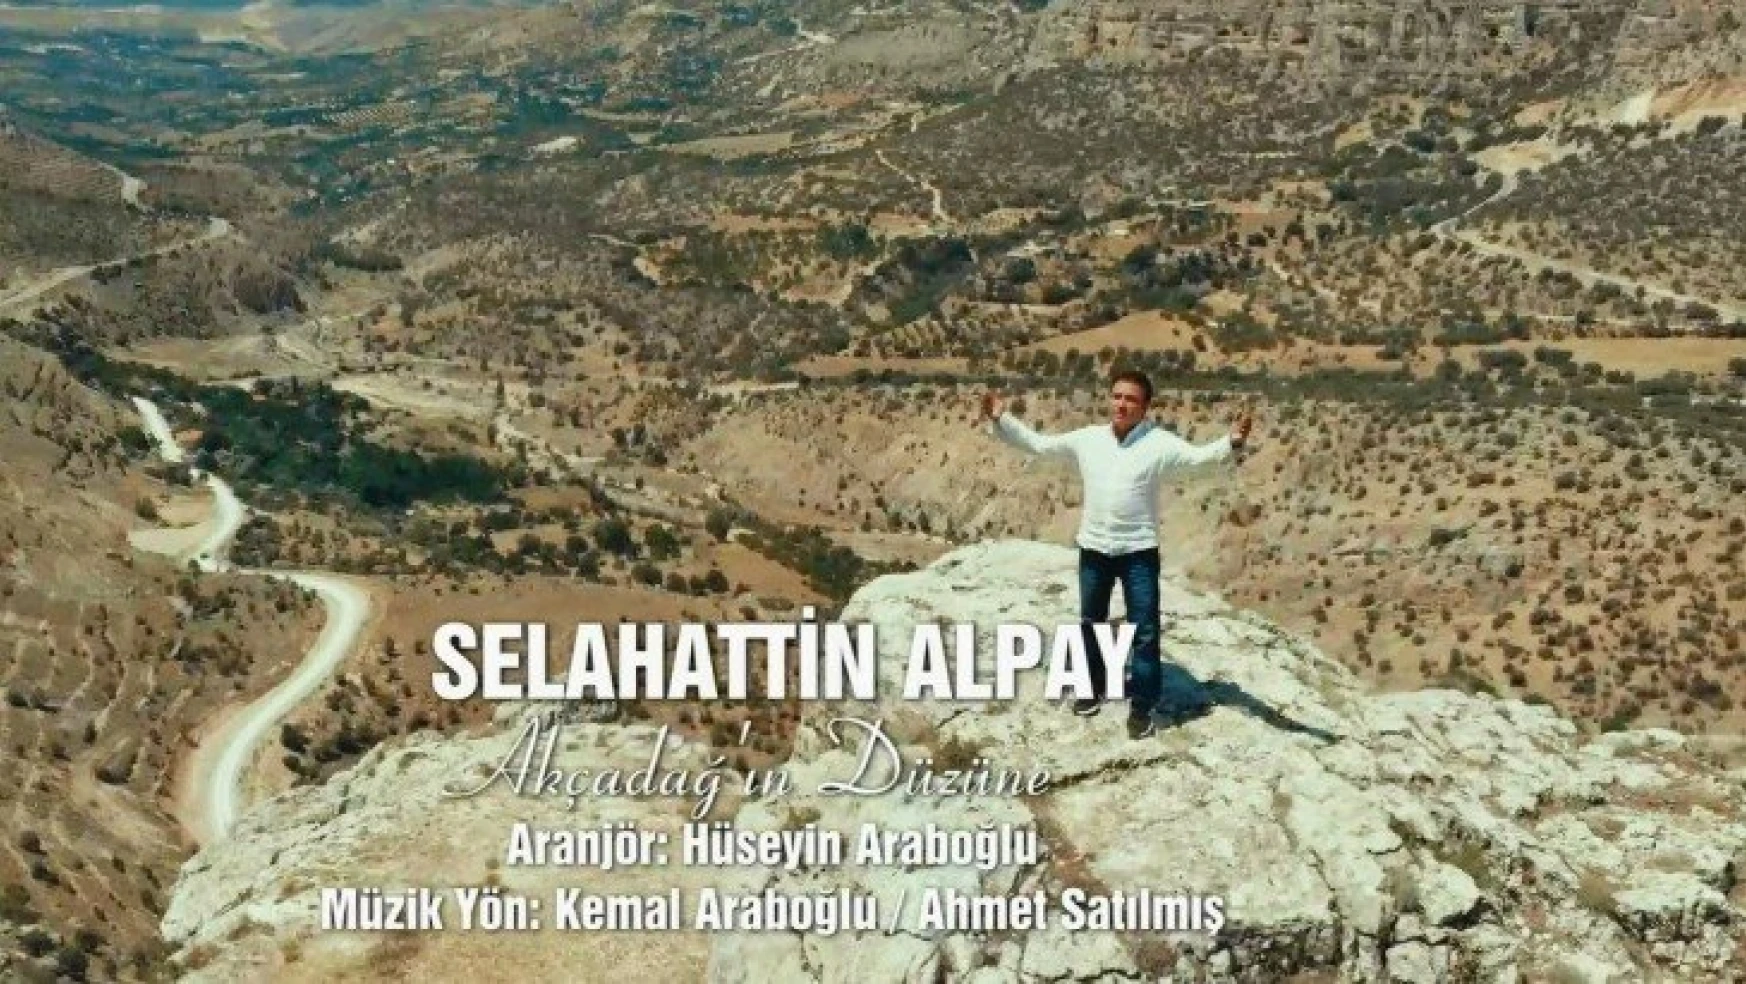 Selahattin Alpay'ın son klipi Akçadağ'da çekildi